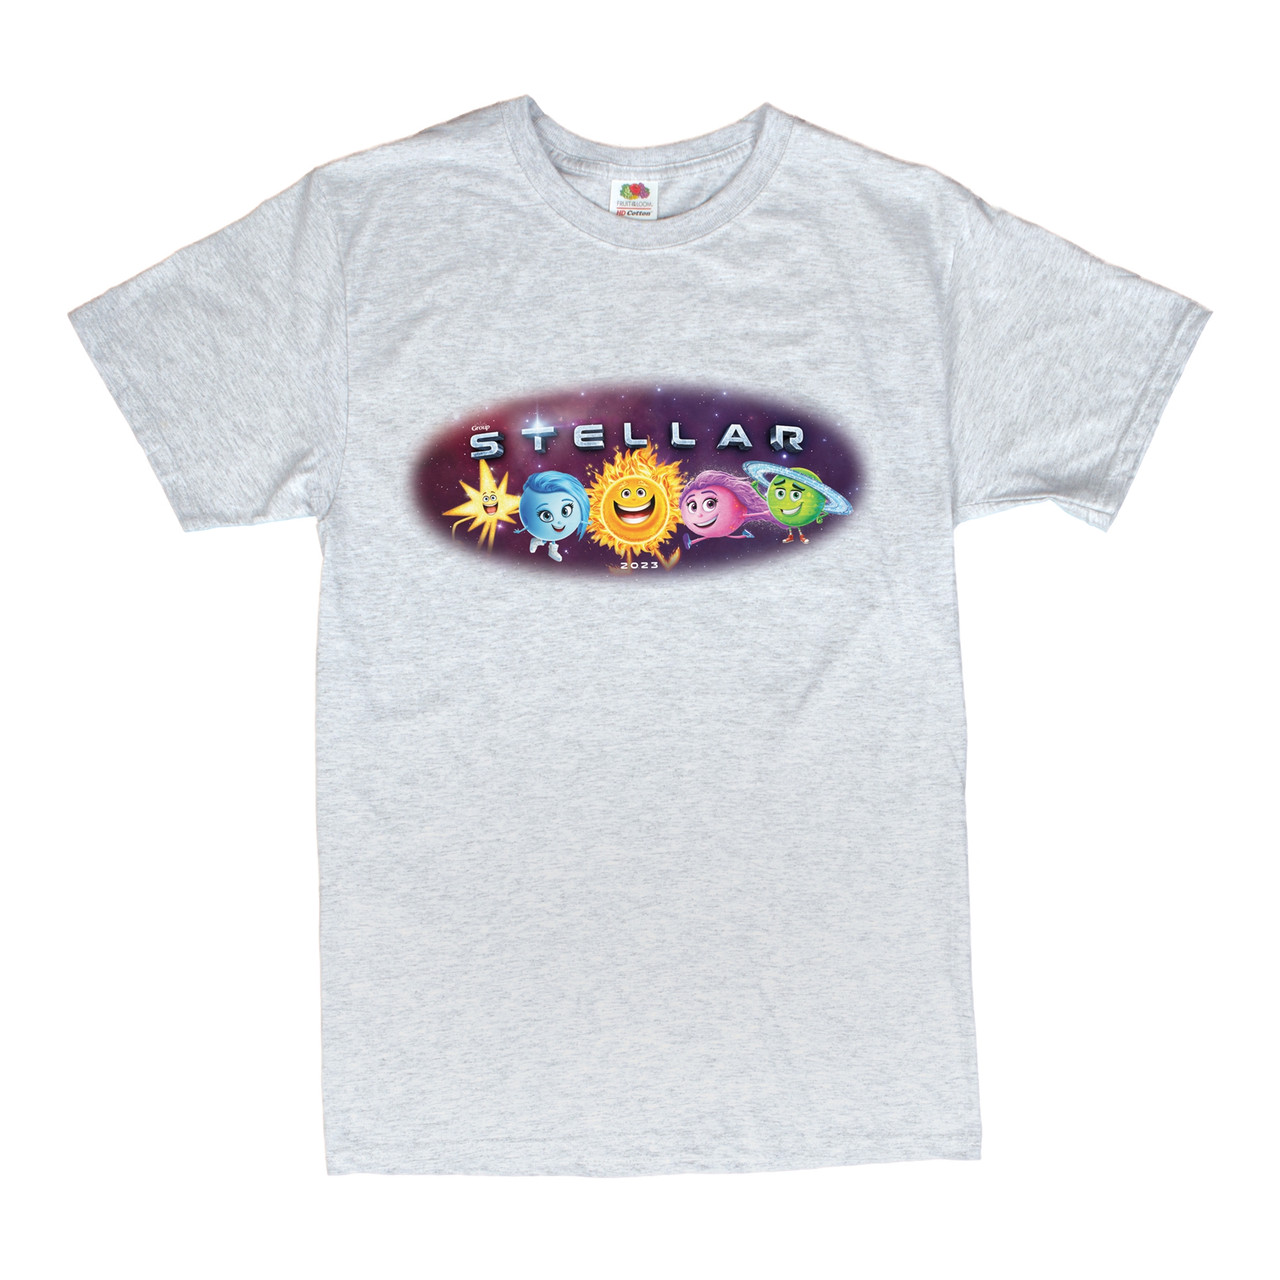 Stellar Theme T-shirt, Child (XS 2-4) | Group